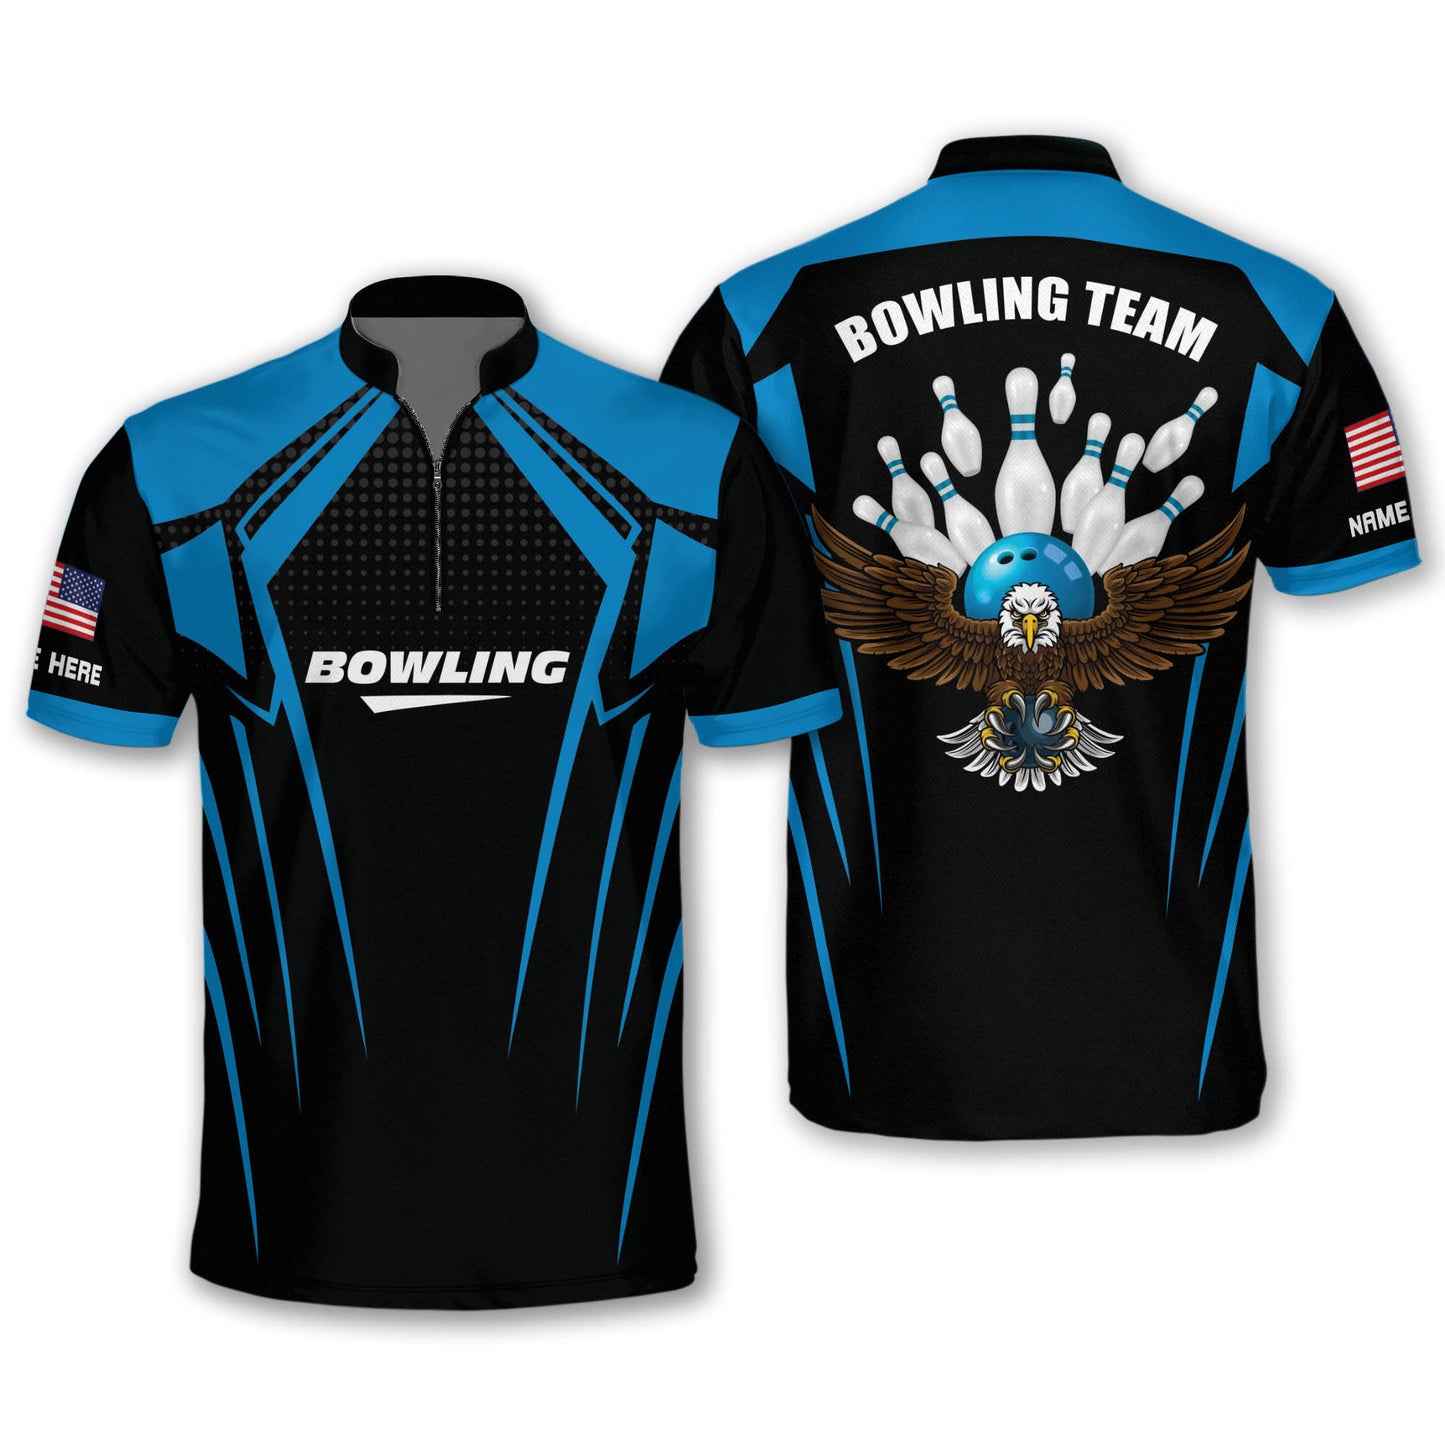 Custom Bowling Shirts For Men - Bowling Jersey Custom For Men - Personalized 3D Bowling Team Shirts for Men - USA Bowling League Jersey Team Shirts BM0248